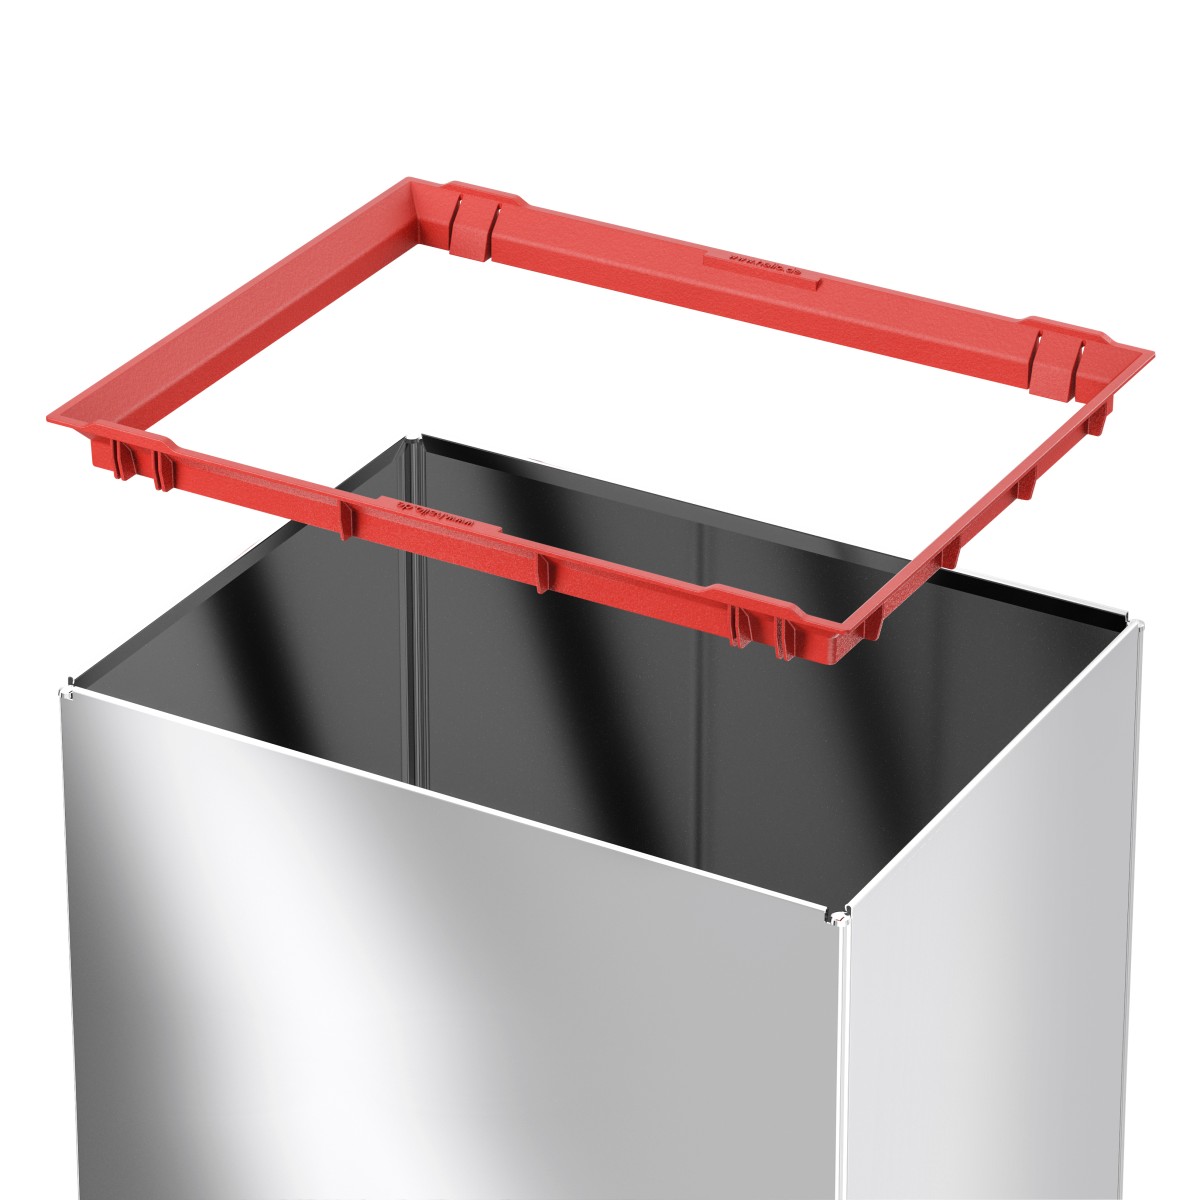 פח אשפה מלבני 52 ליטר למטבחים ומשרדים Big-Box Swing XL HAILO - צבע נירוסטה